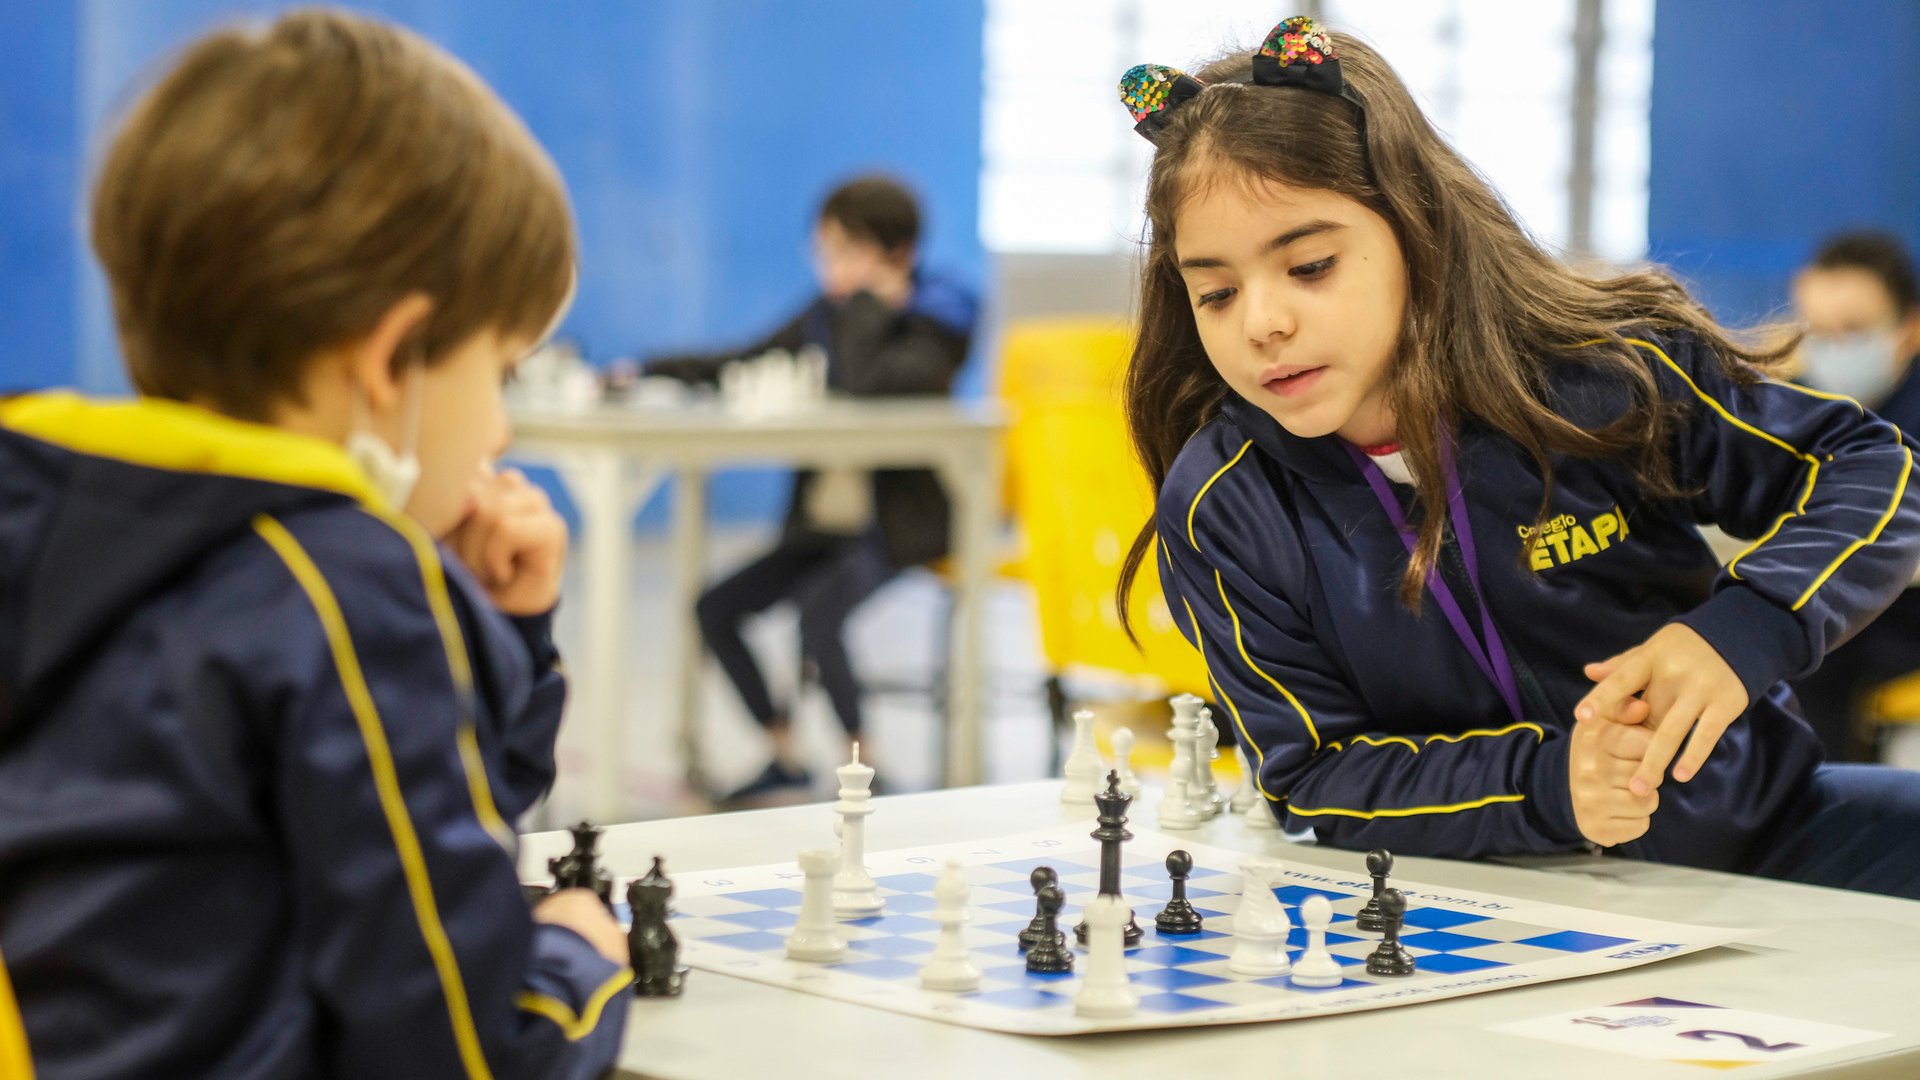 Curso de xadrez para iniciantes - aula 1 